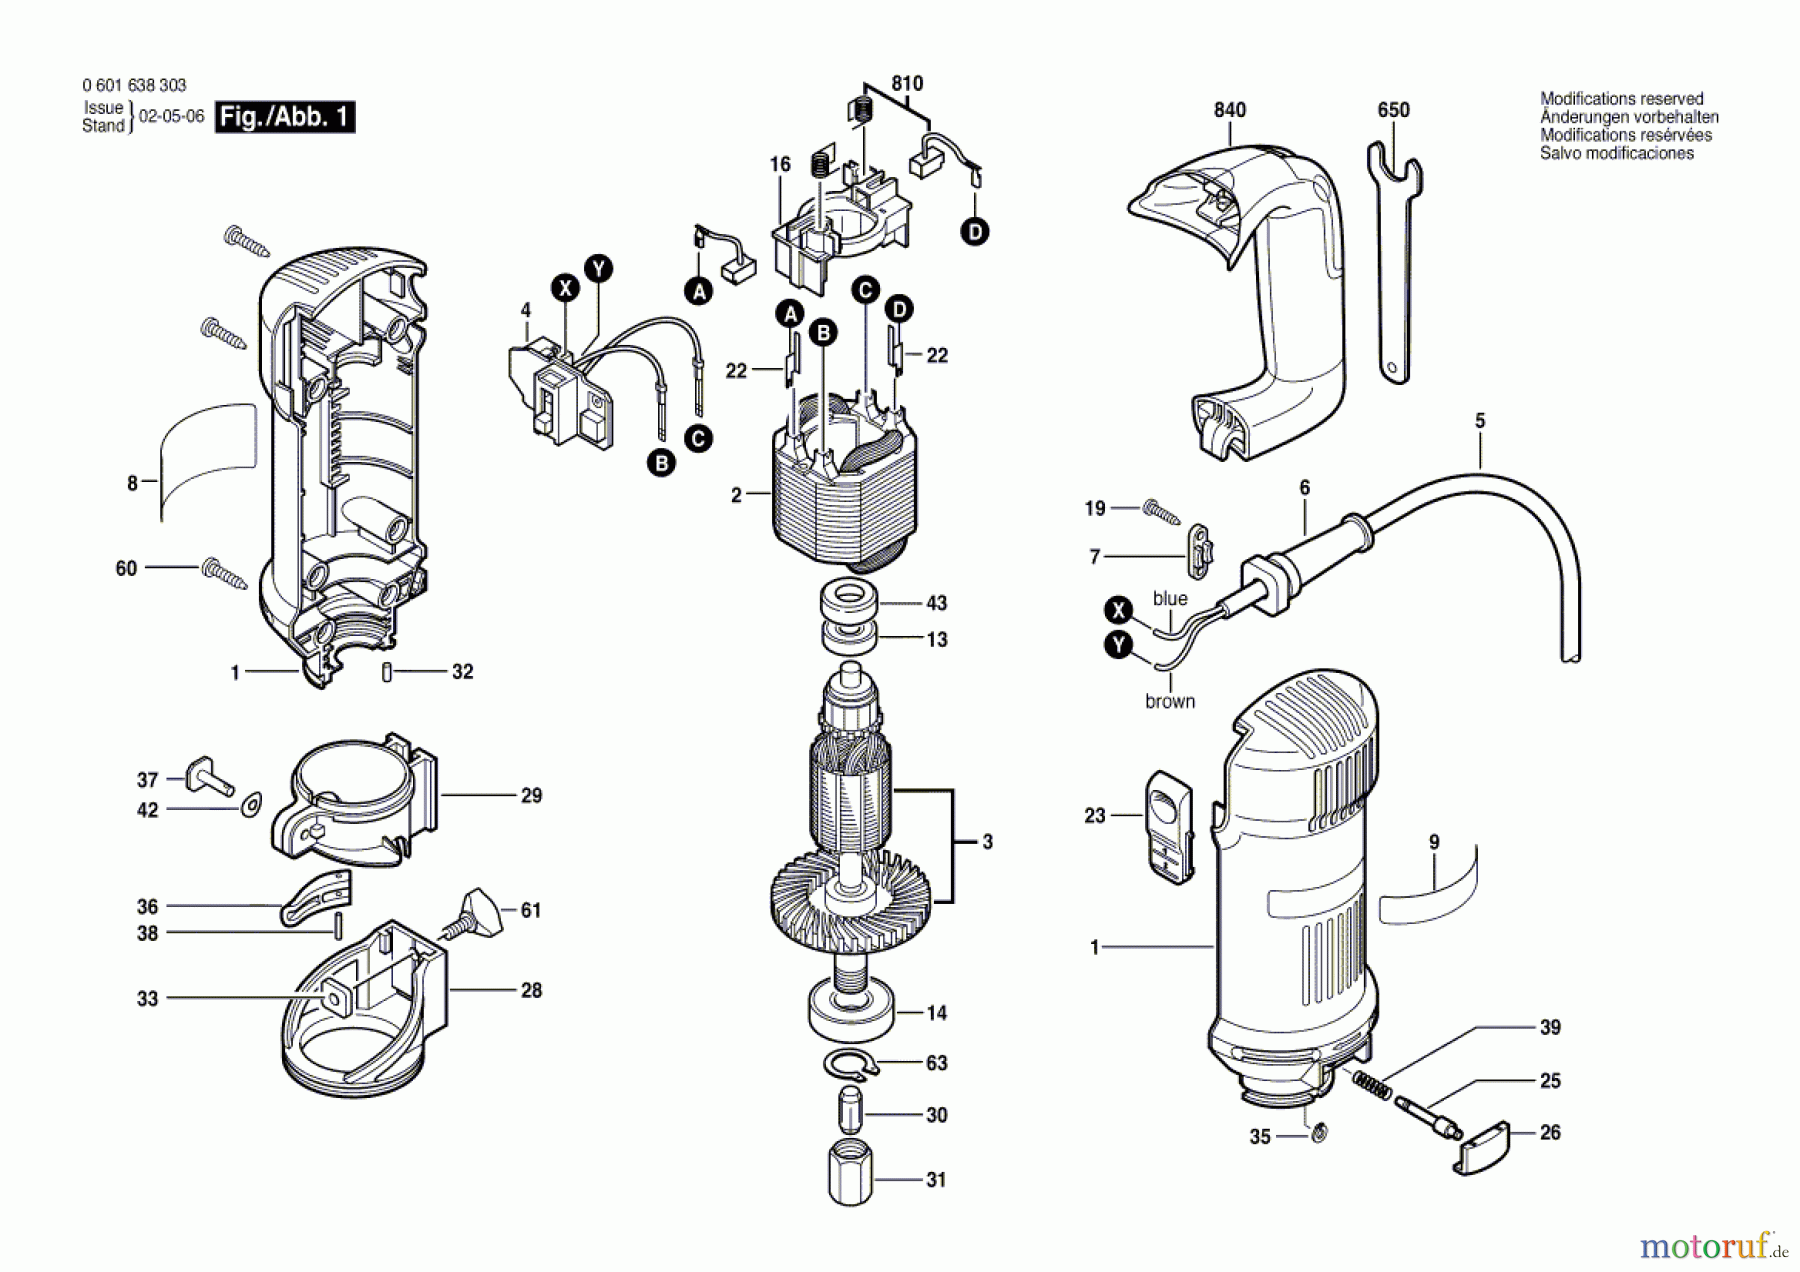  Bosch Werkzeug Oberfräse ROTOCUT PLUS Seite 1